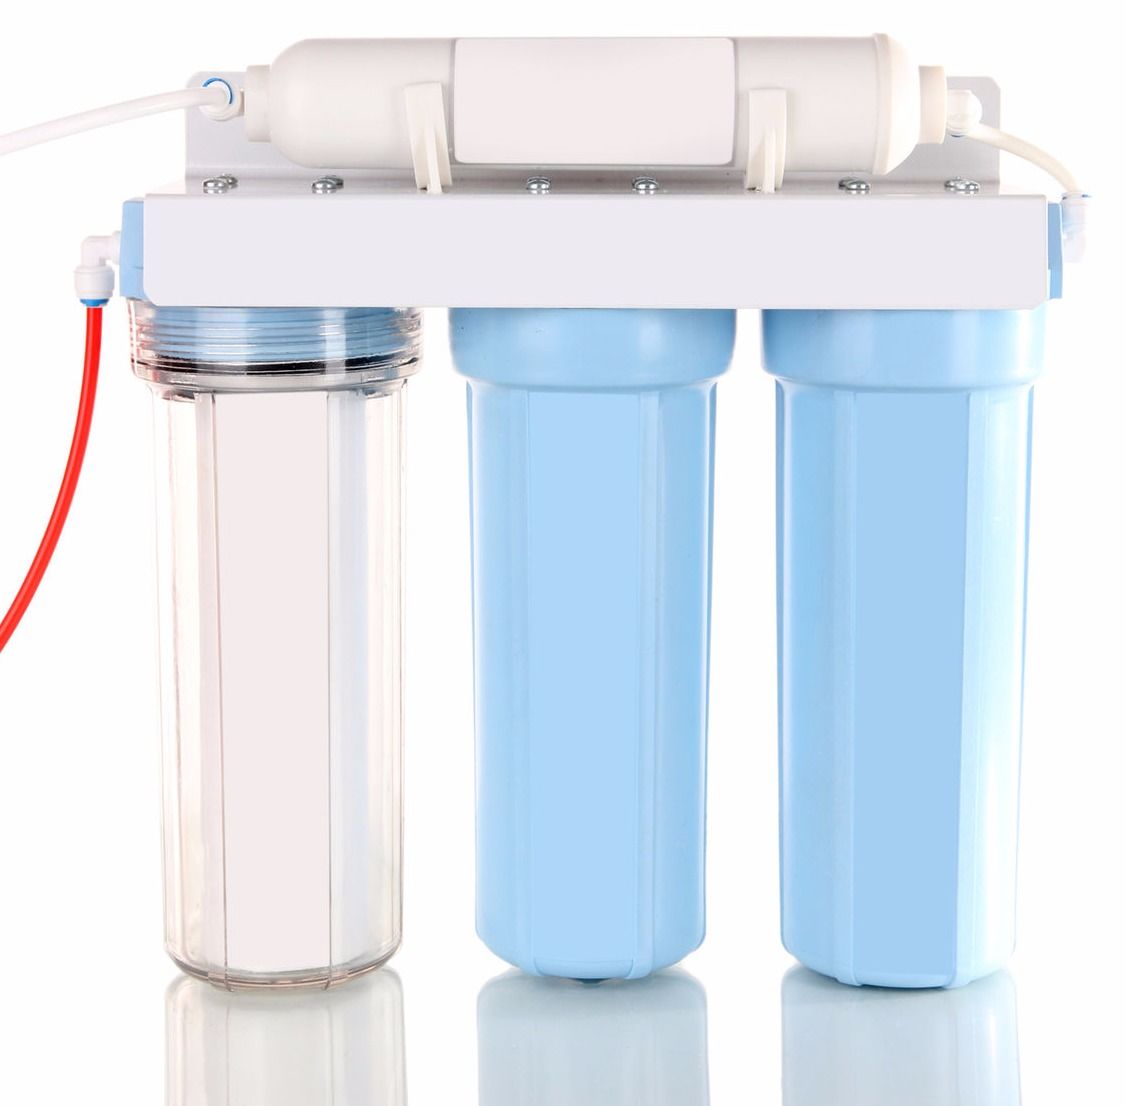 Проточный фильтр для воды. Фильтр для воды с индикатором загрязненности. Купить фильтр для воды от извести